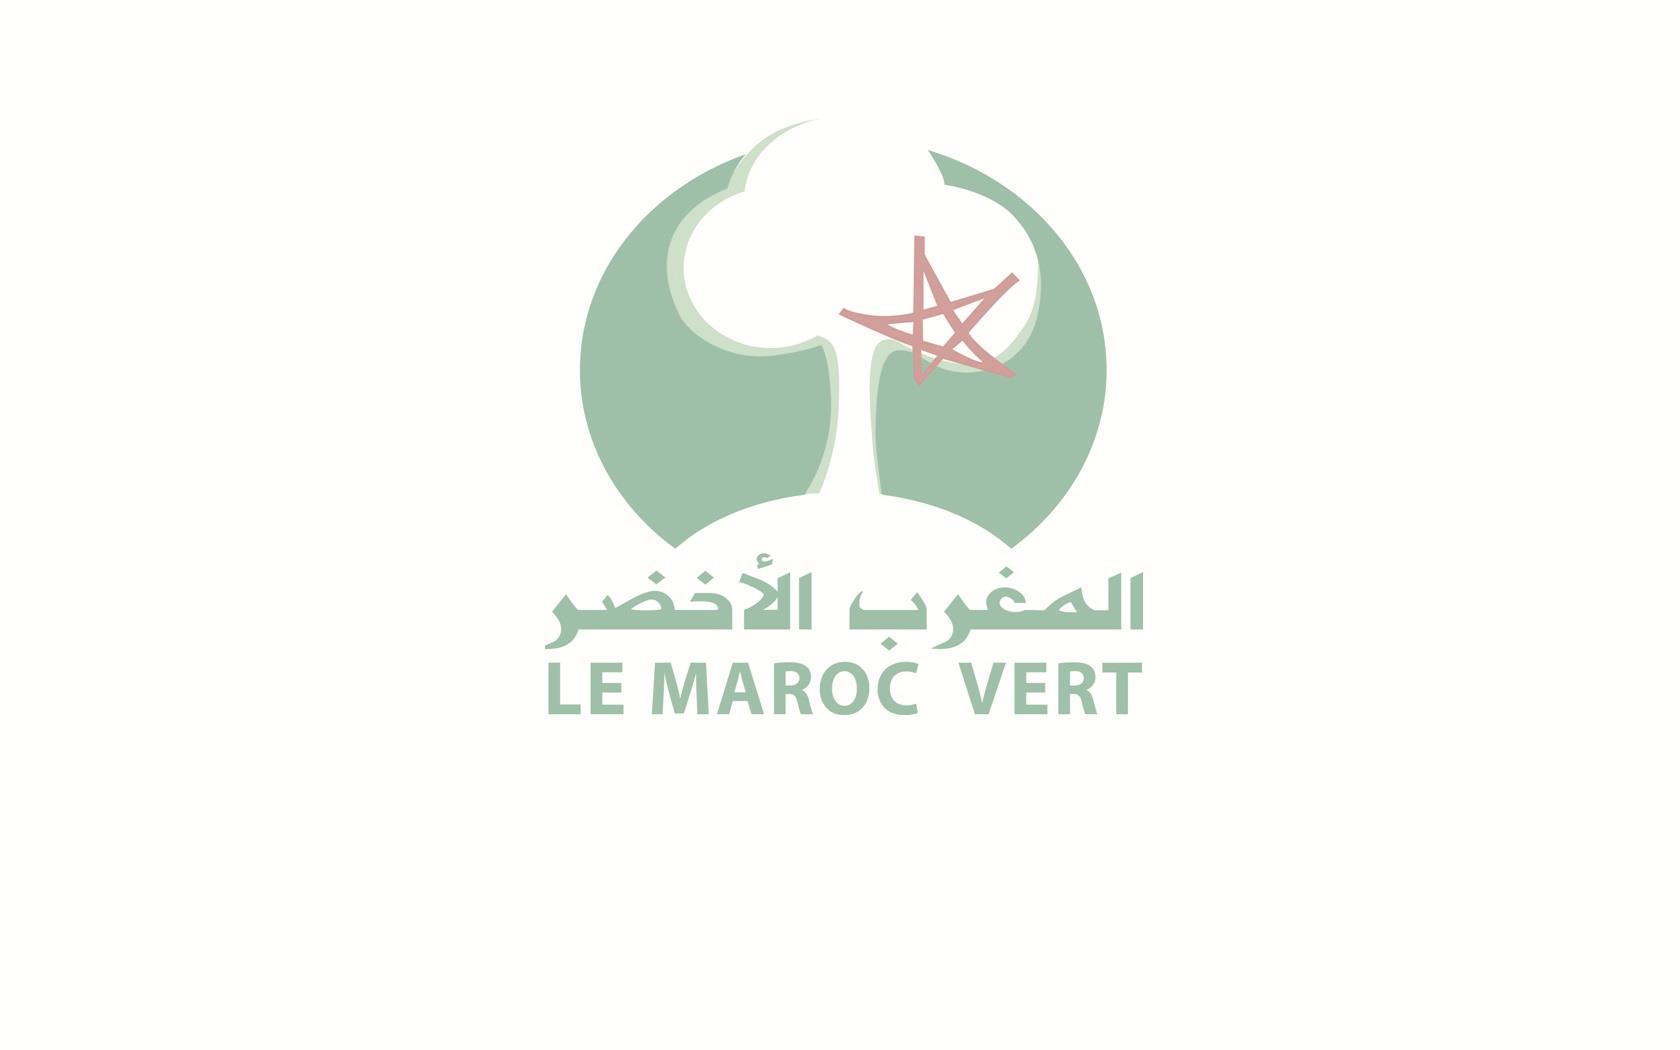 Plan Maroc Vert Adoption d approches transactionnelles autour de projets de développement concrets (agrégation, reconversion, intensification, diversification de production) Développement de l